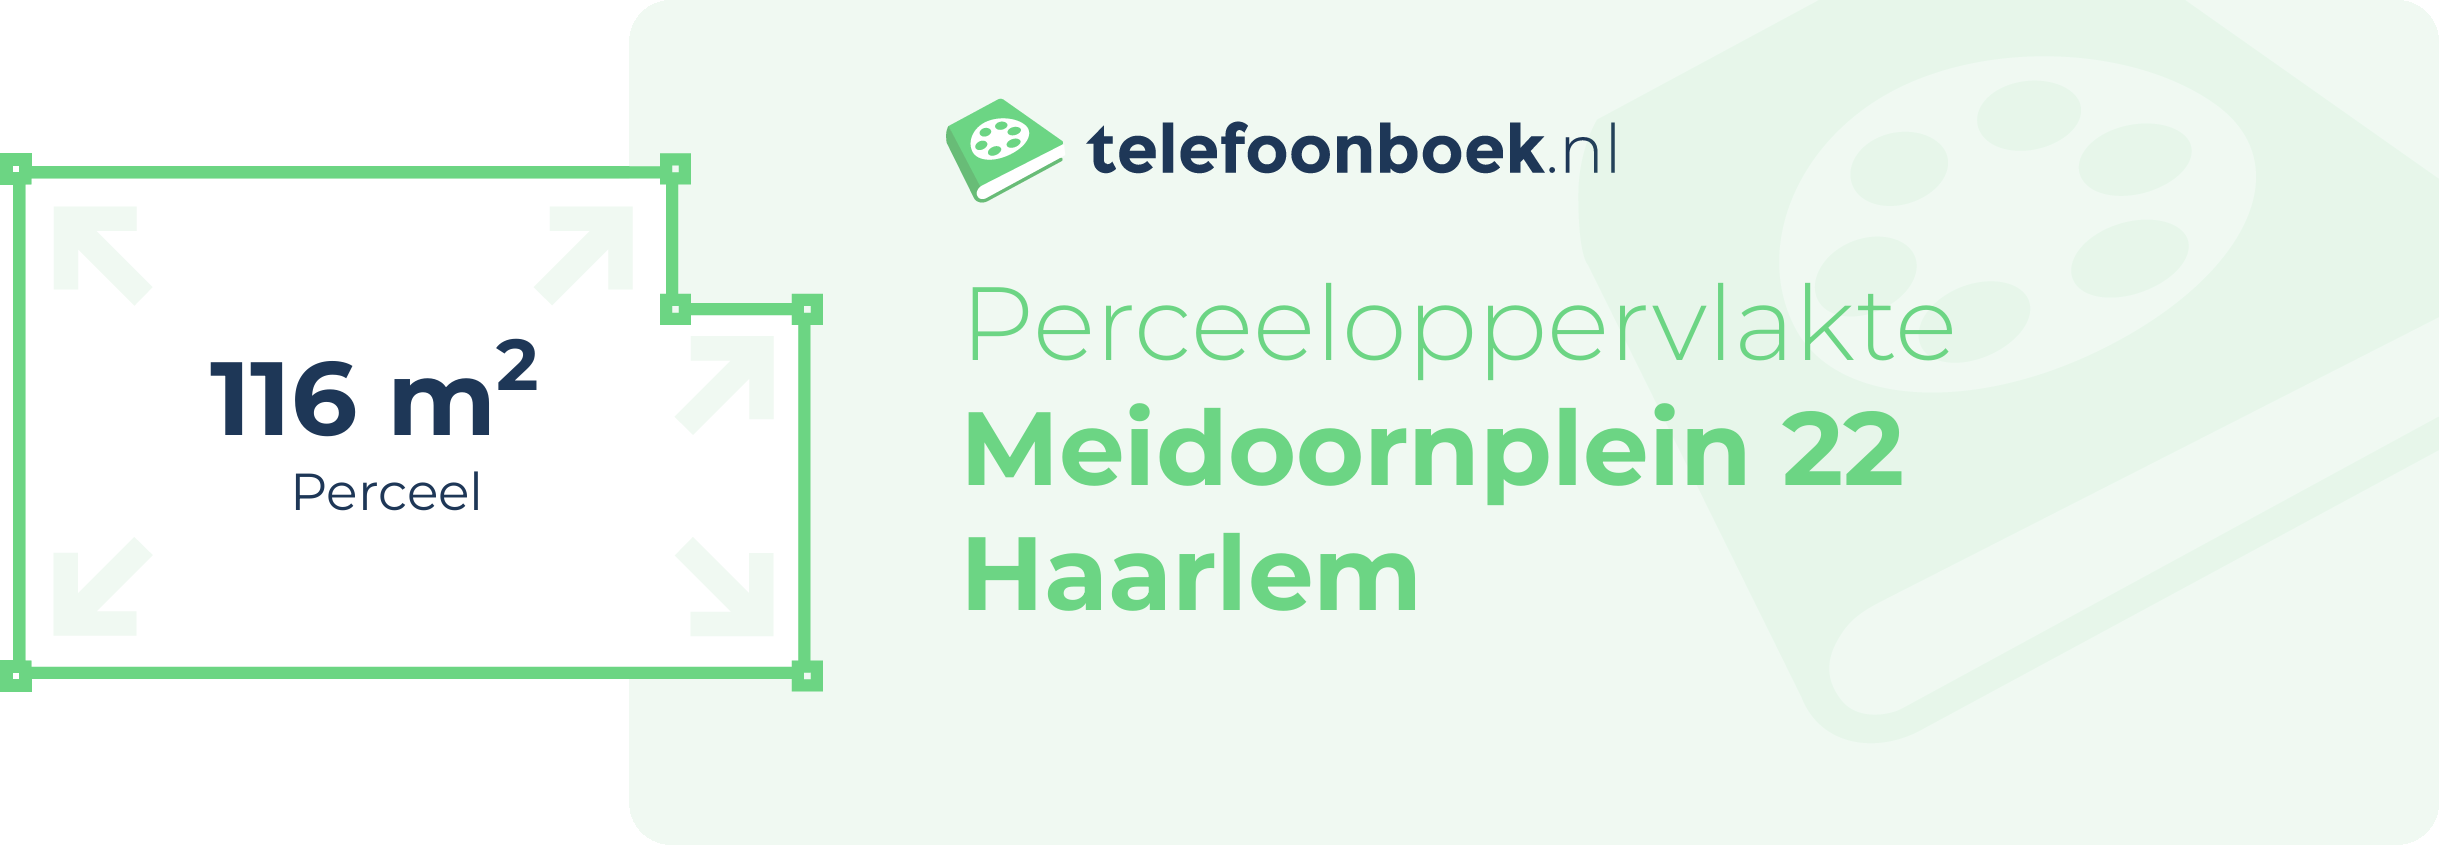 Perceeloppervlakte Meidoornplein 22 Haarlem